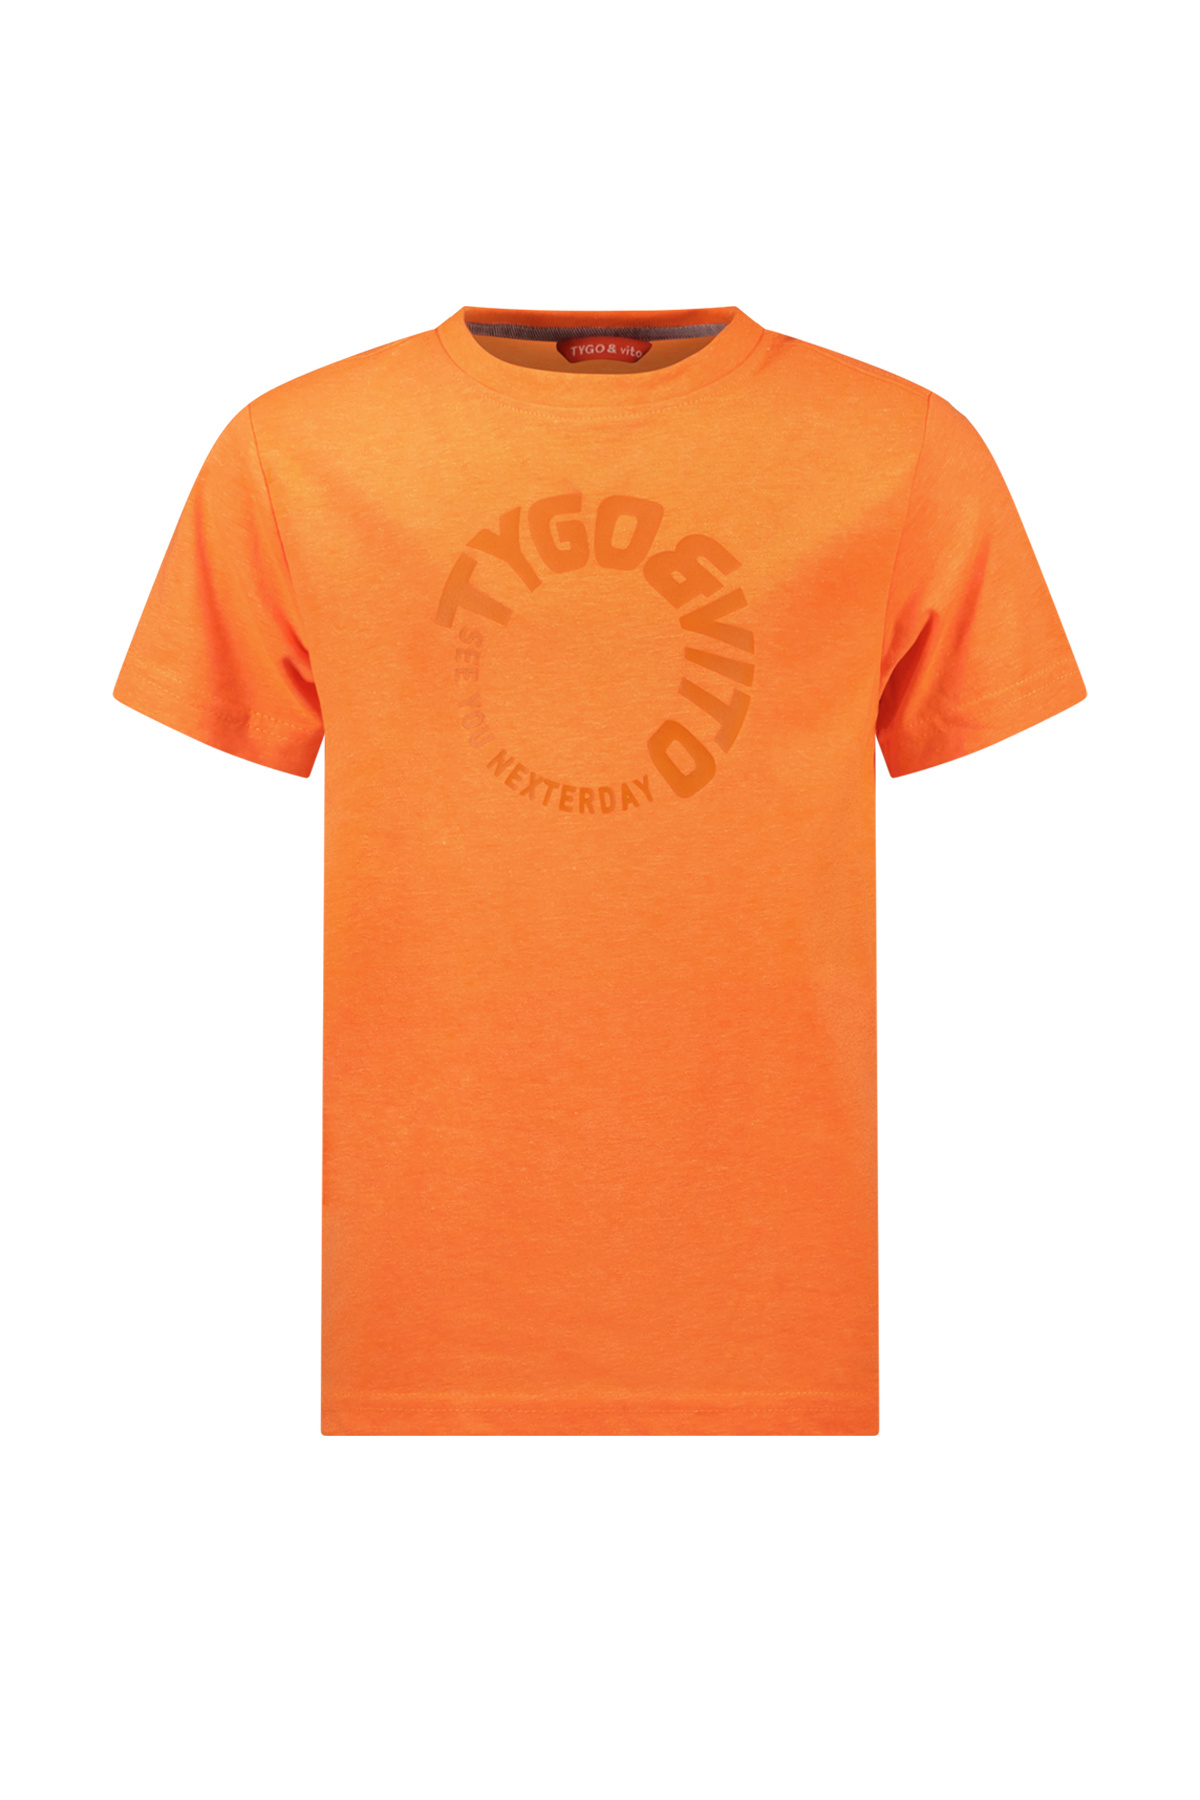 TYGO & vito X402-6426 Jongens T-shirt - Neon Orange - Maat 122-128